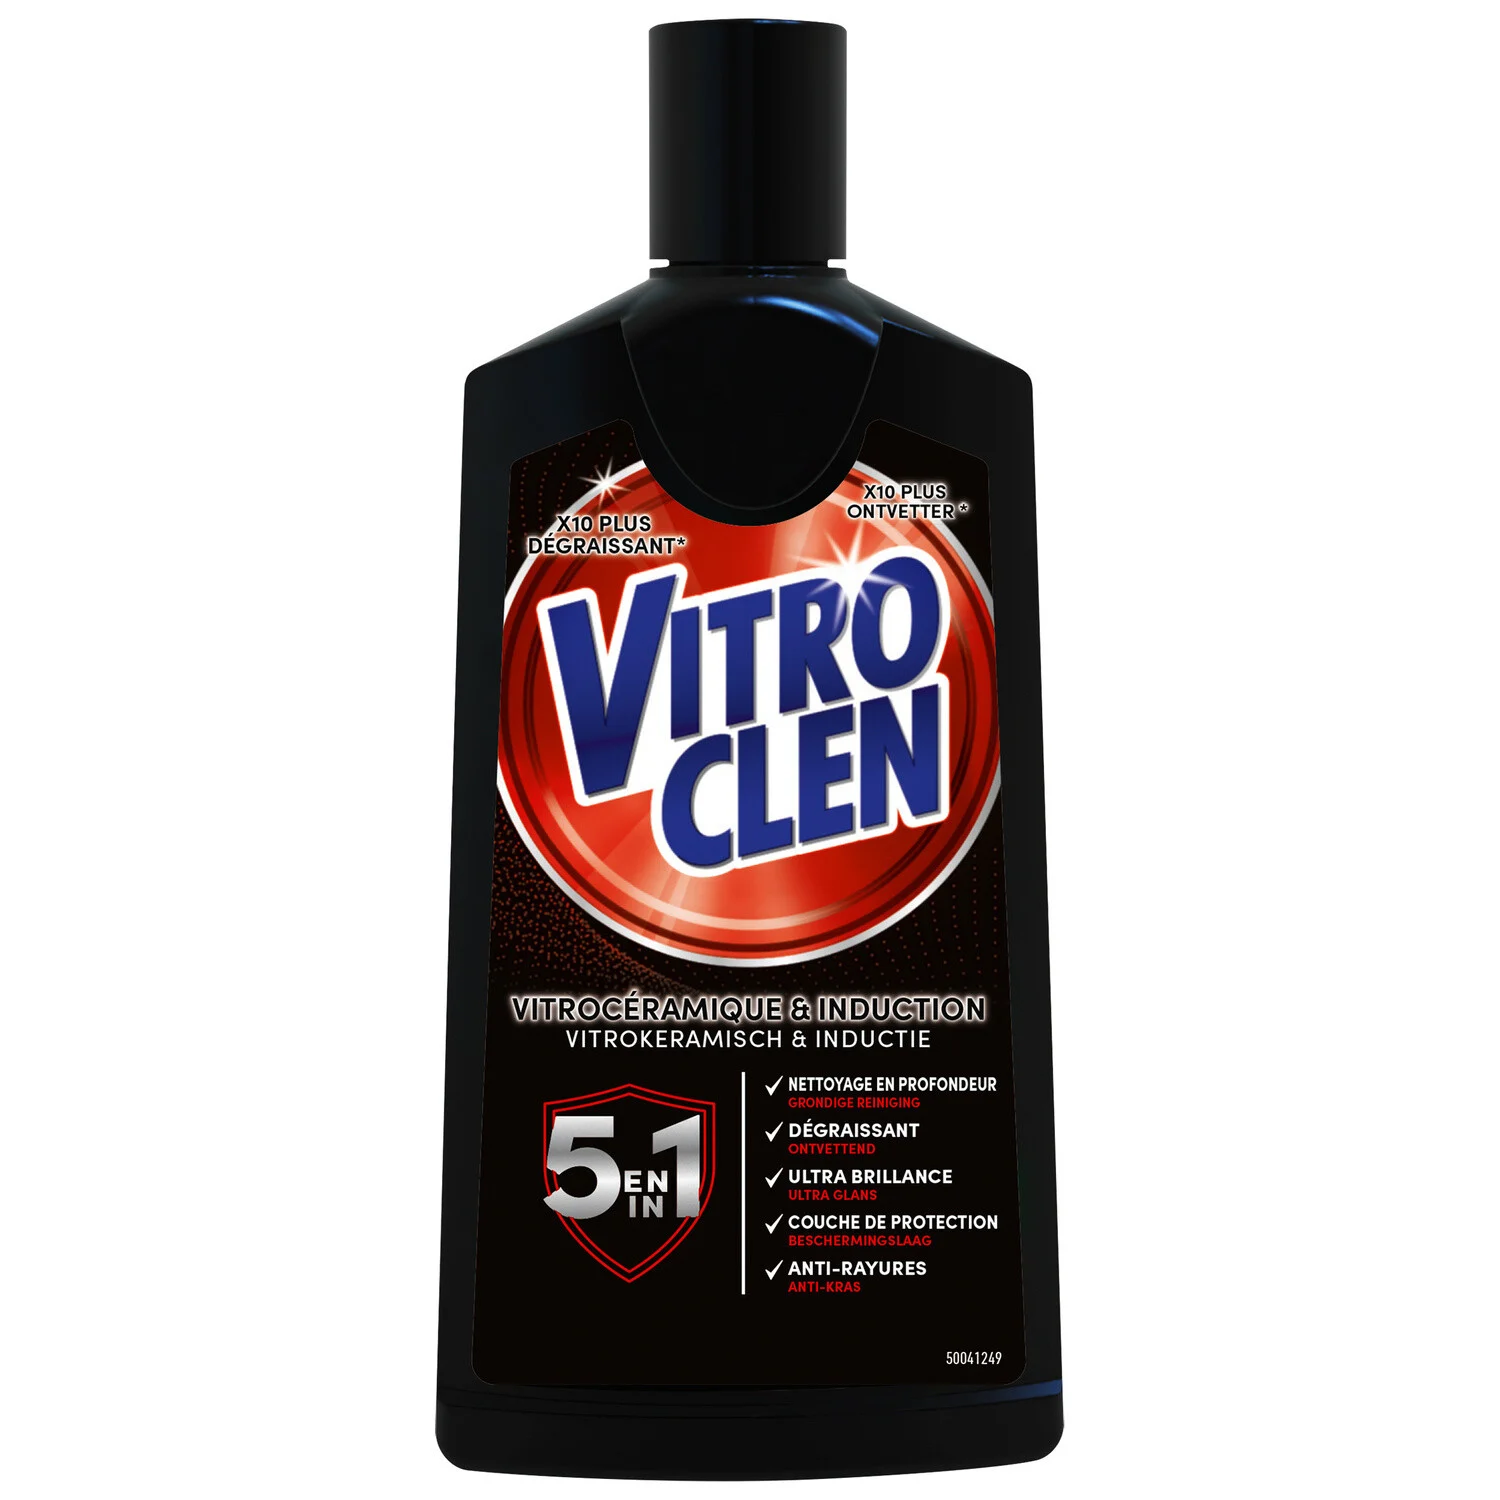 Vitroclen cleaning cream 5 in 1 200ml